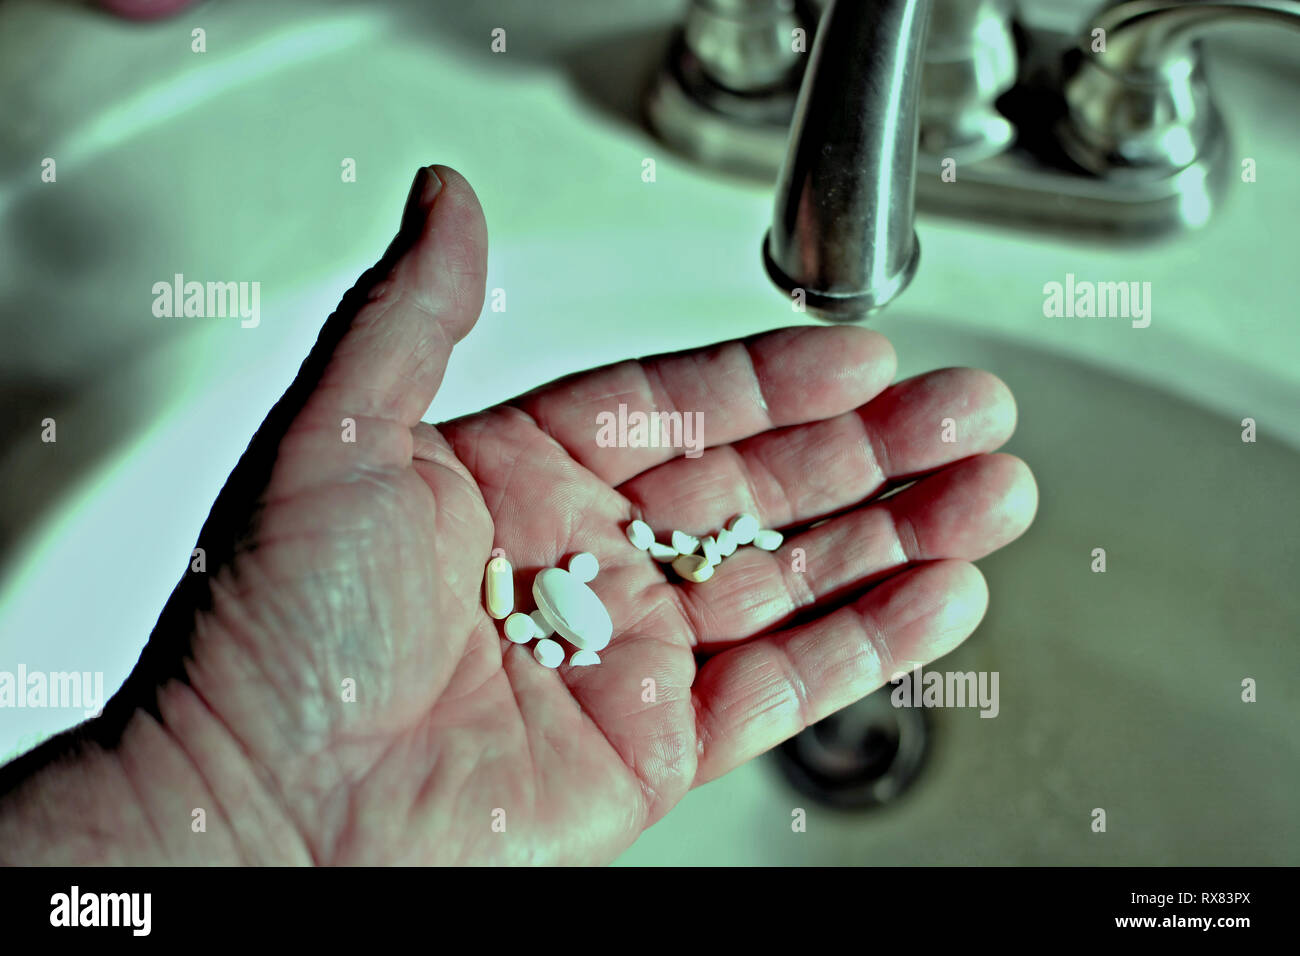 Eine Nahaufnahme der Hand ein älterer bereit, seine Pillen in den Abfluß zu werfen Stockfoto